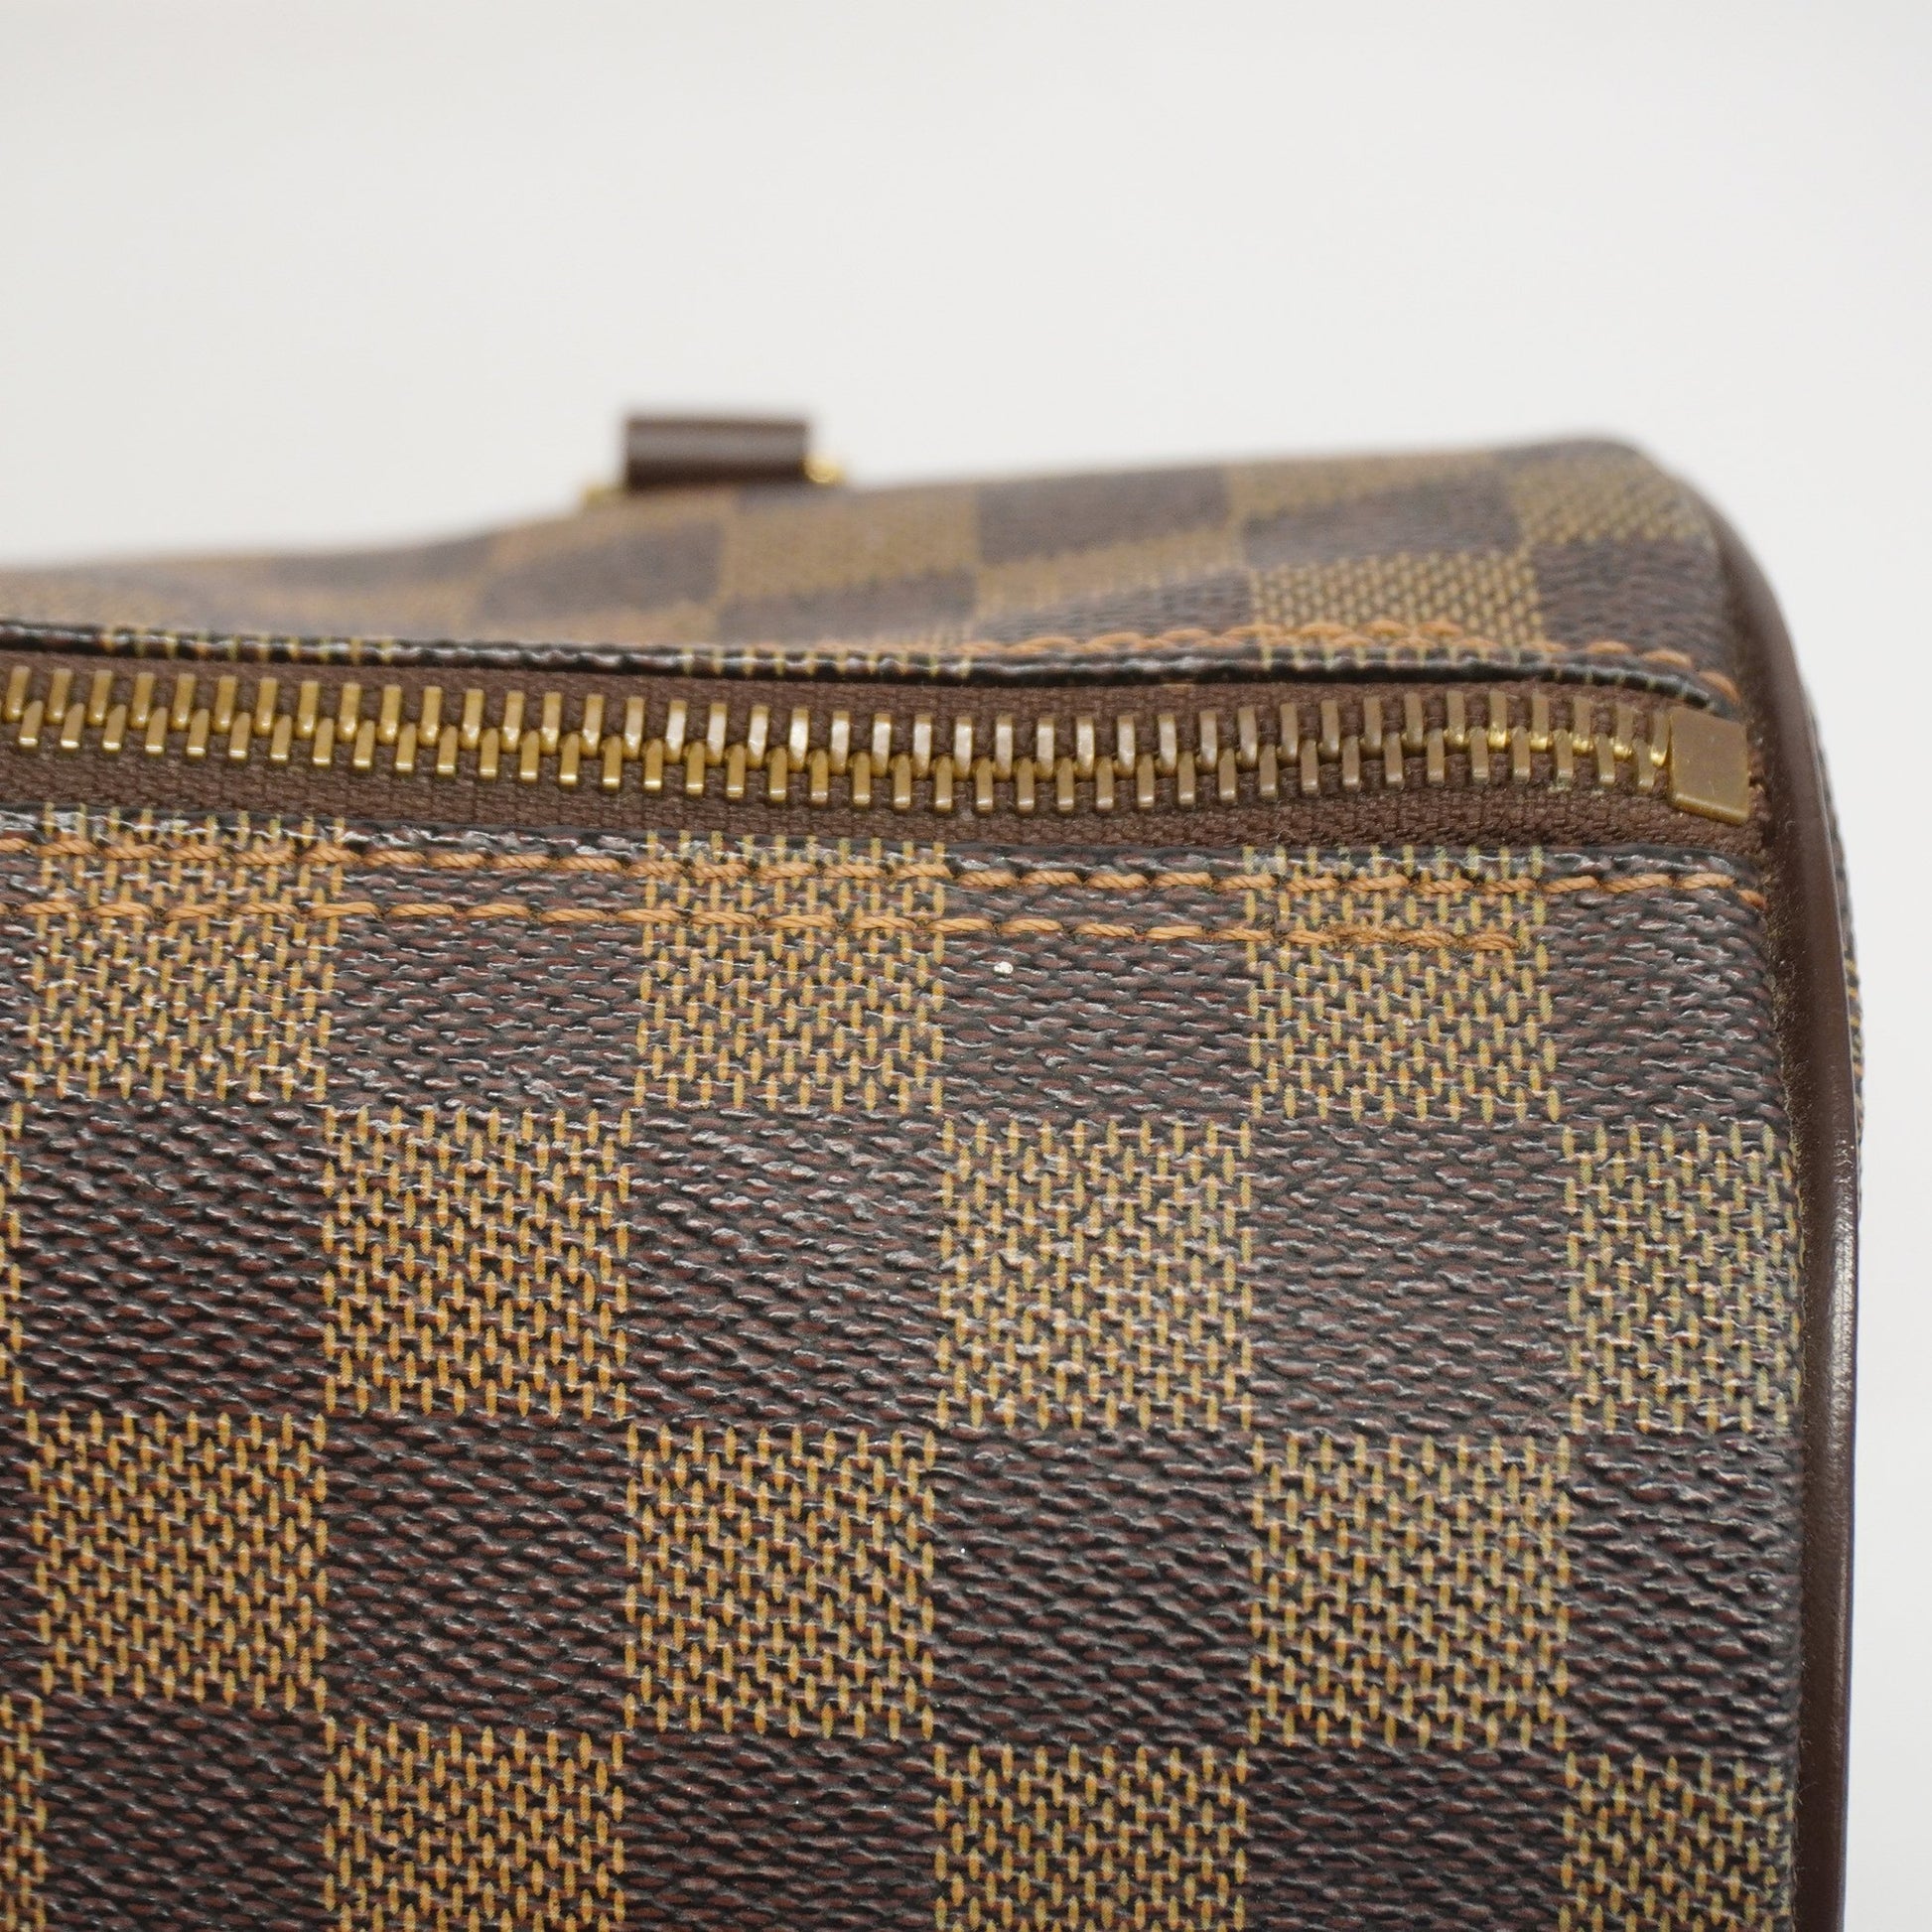 Louis Vuitton Damier Papillon Pm N51304 Women's Handbag Auction